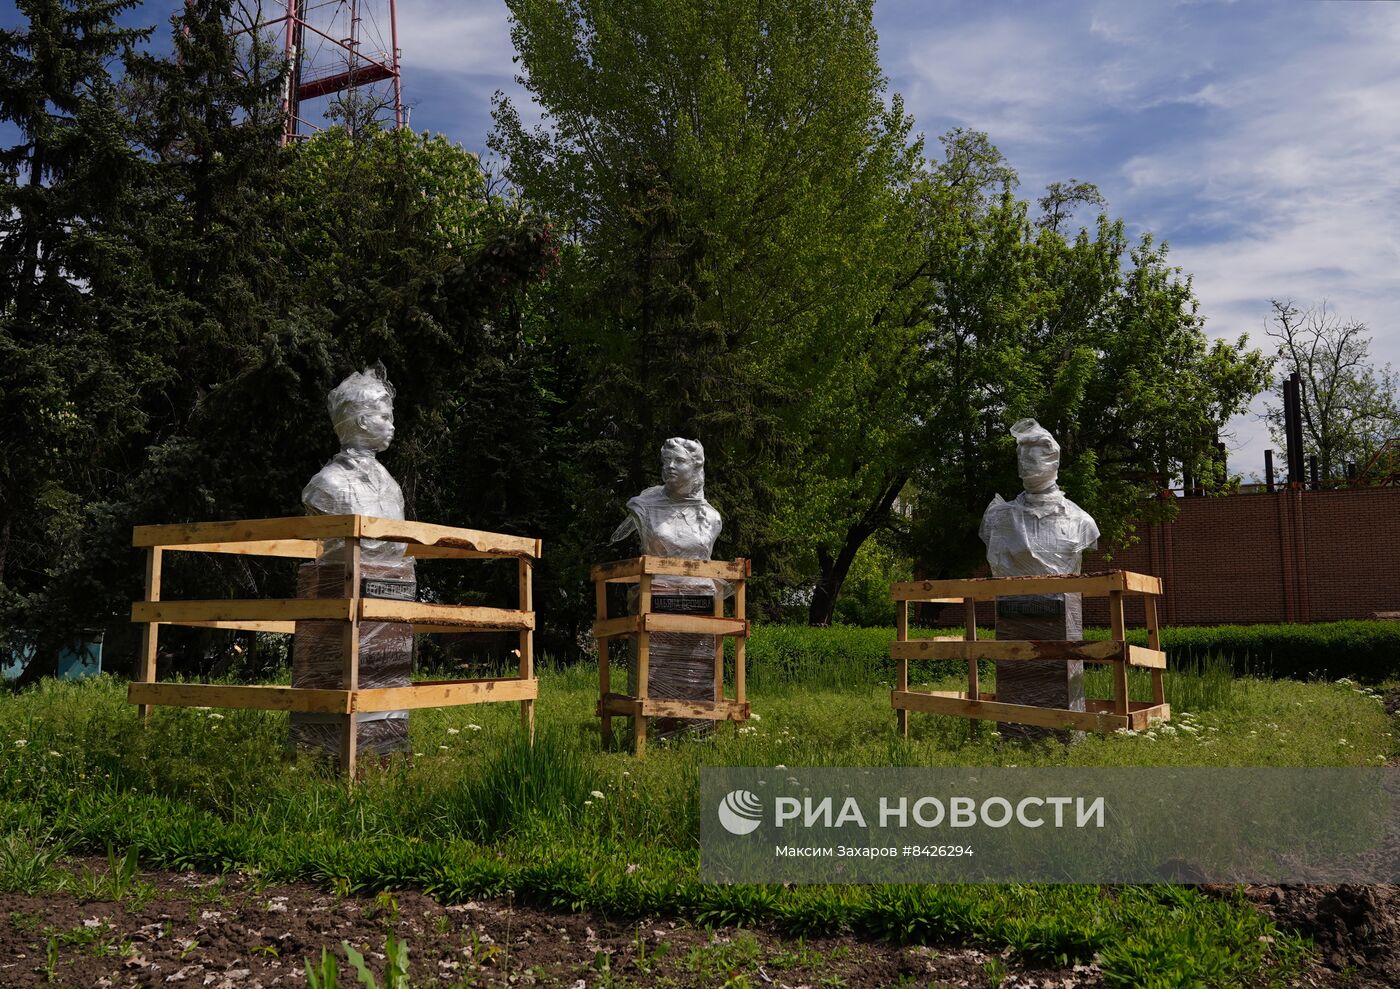 Строители из РФ восстанавливают парк в центре Луганска